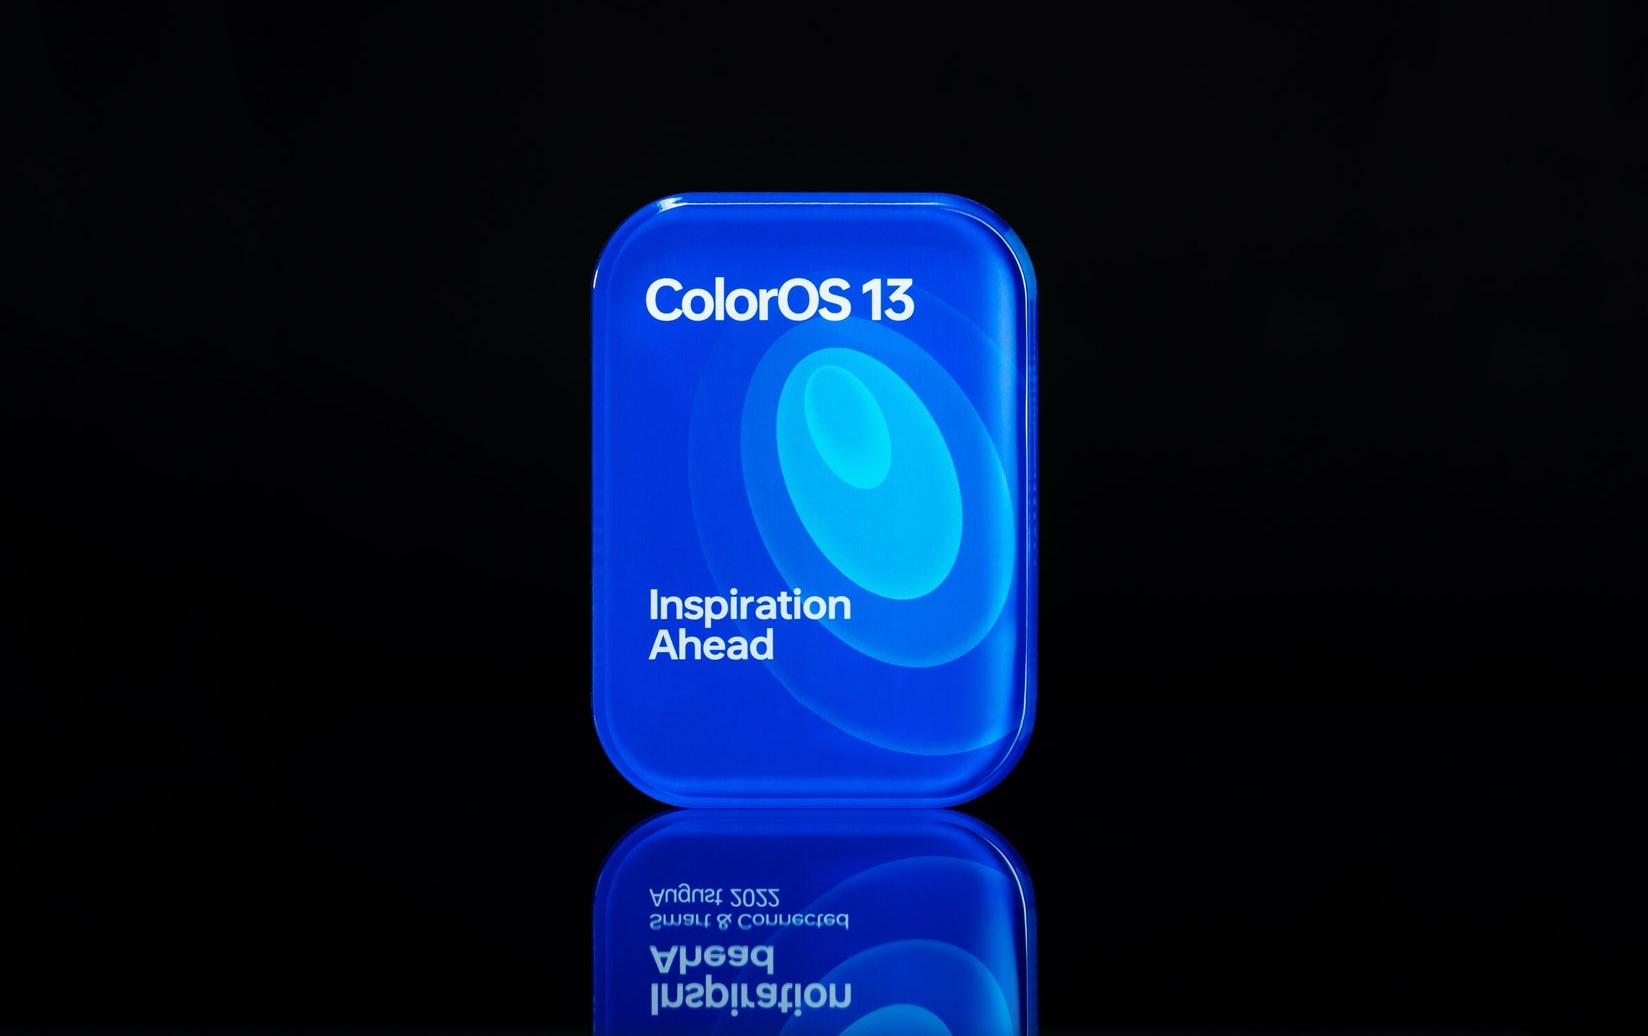 OPPO svela la skin ColorOS 13 basata su Android 13